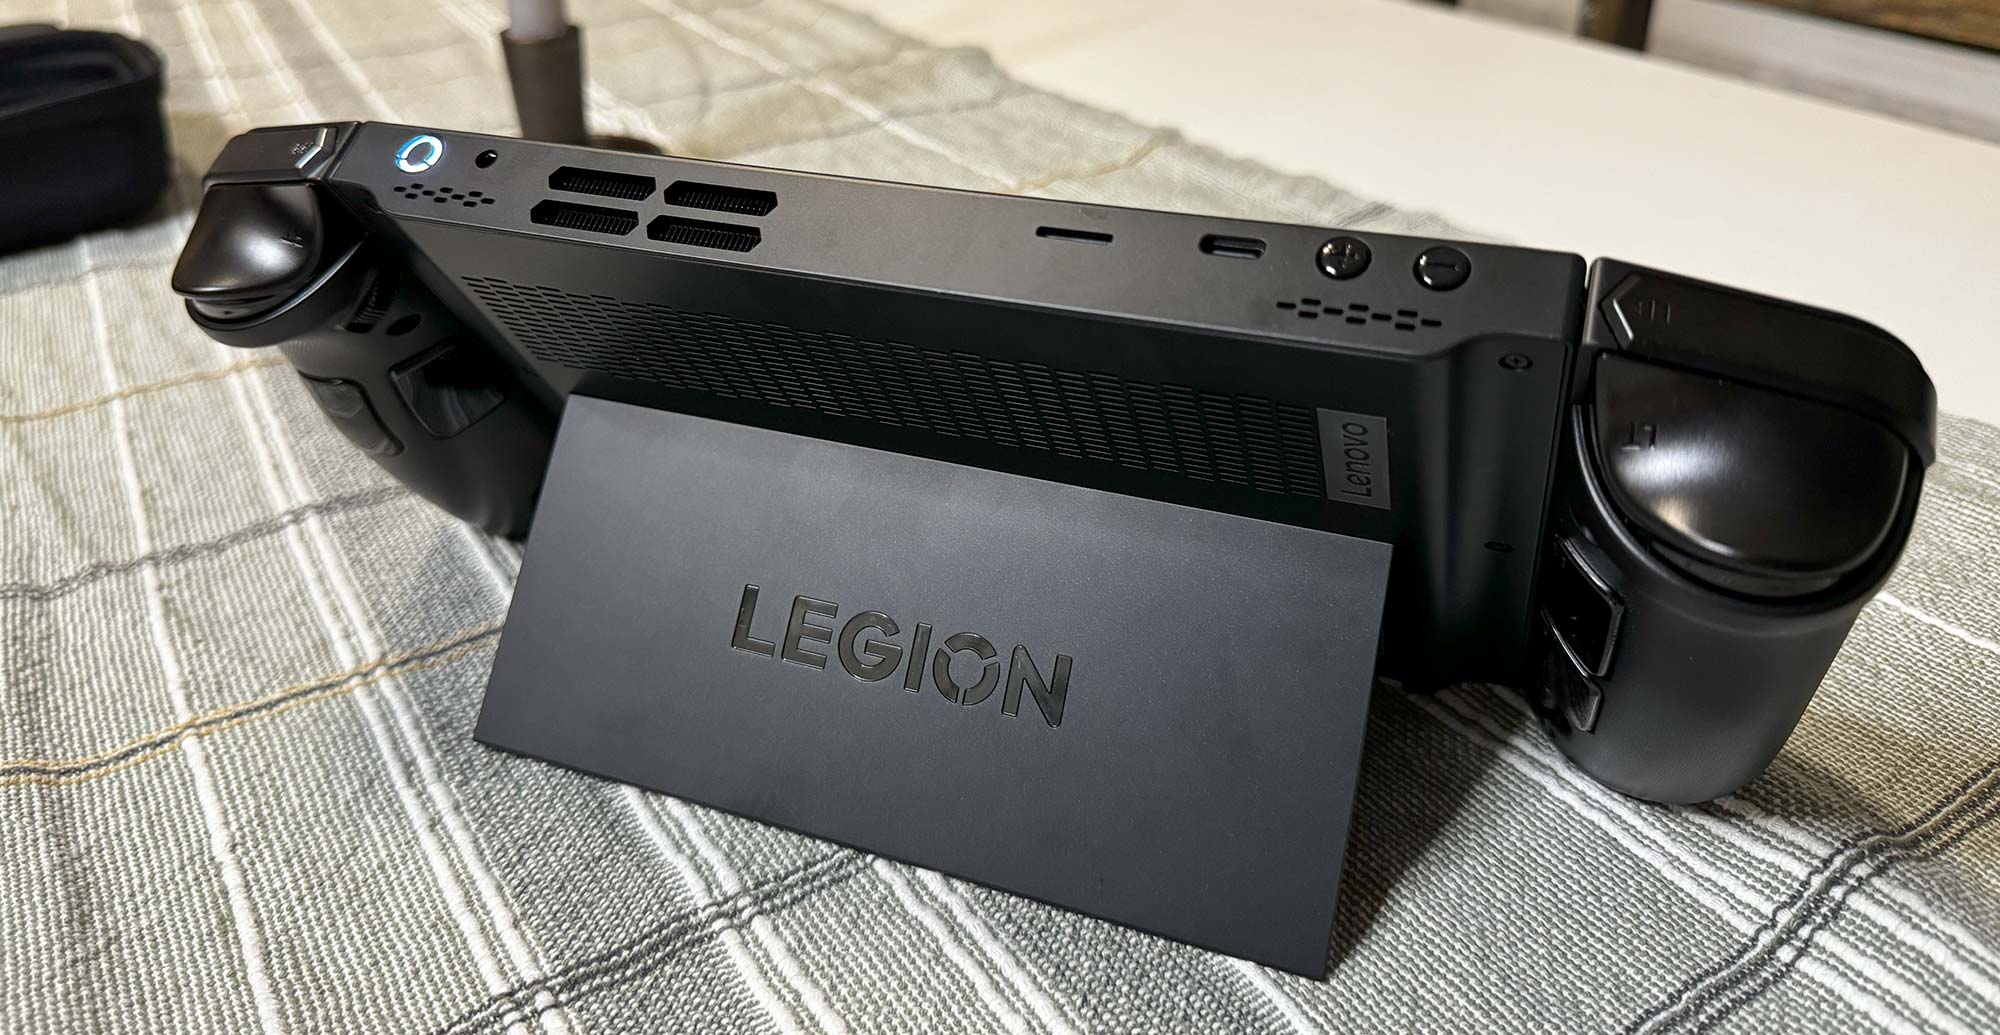 Lenovo Legion Go AMD Ryzen Z1 Extreme 16GB/512GB Videoconsola Portátil 8.8